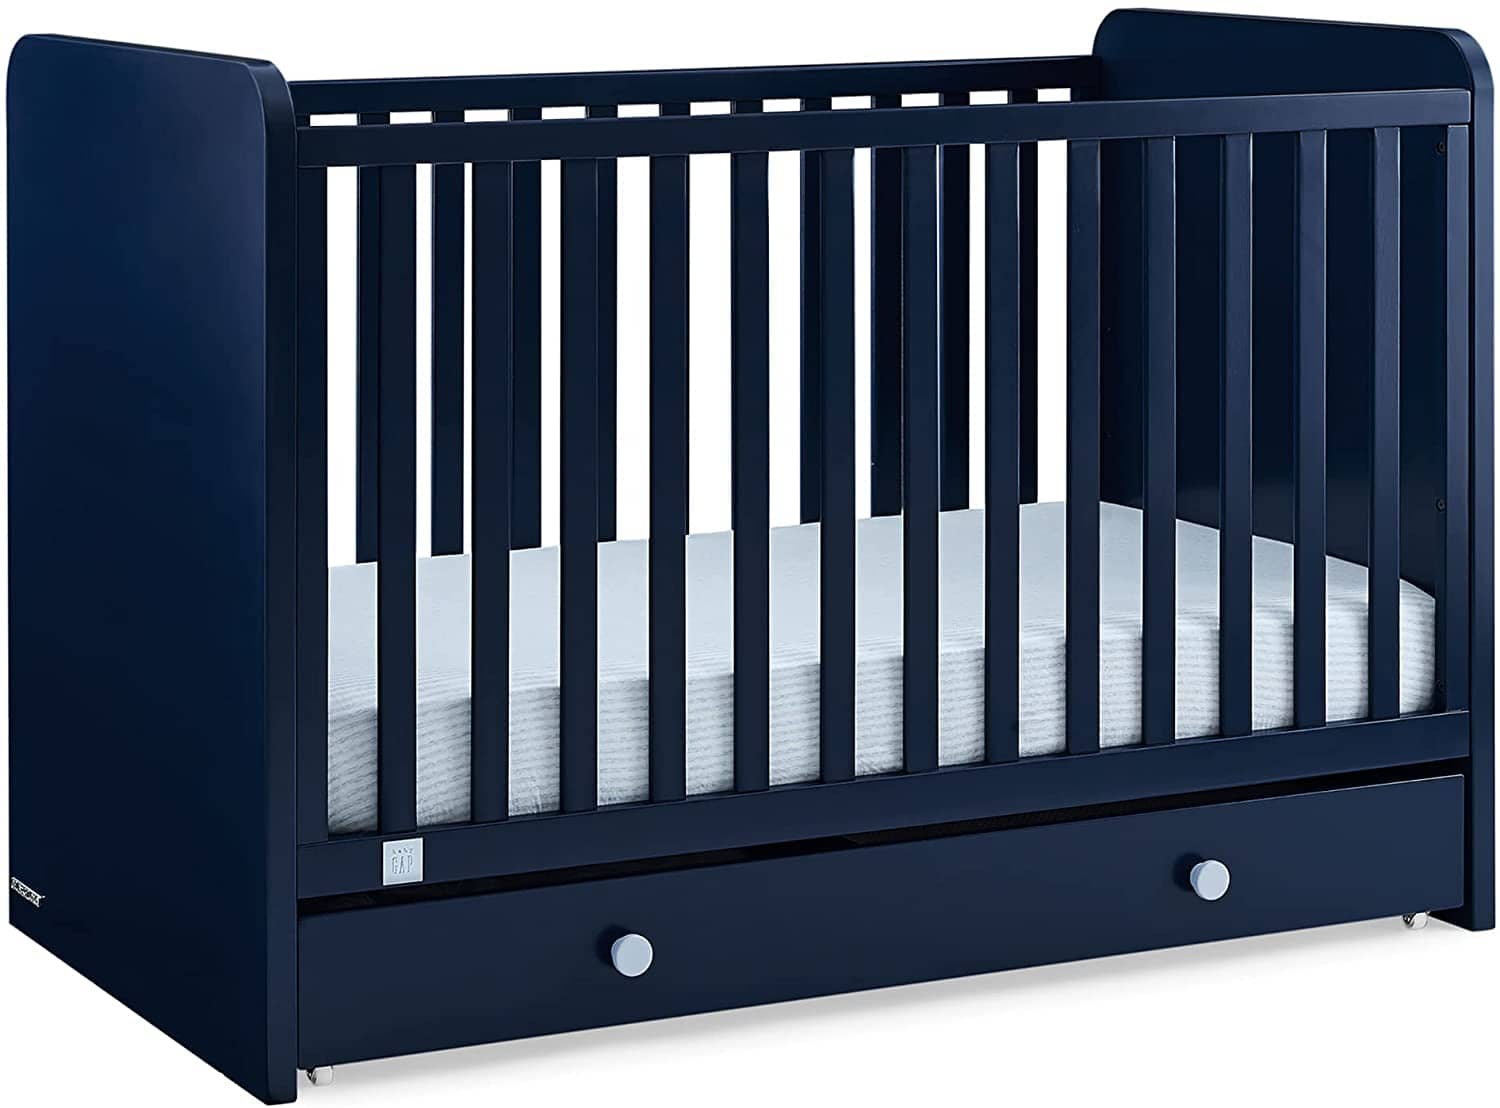 Delta Children babyGap Graham 4-in-1 Convertible Crib with Storage Drawer